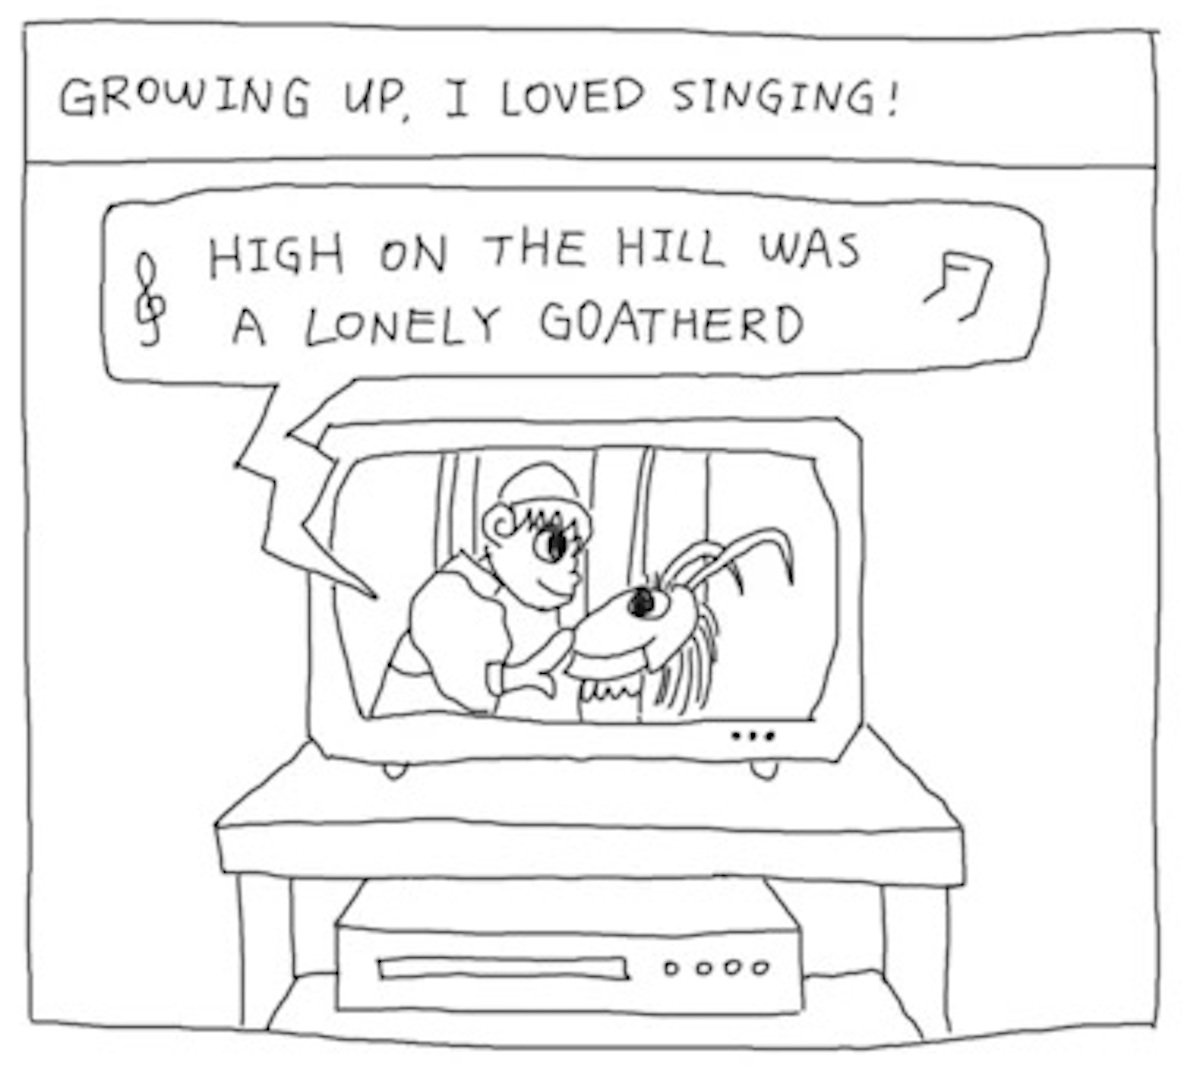 â€œGrowing up, I loved singing!â€
The marionette scene from The Sound of Music is playing on the TV: â€œHigh on the hill was a lonely goatherdâ€